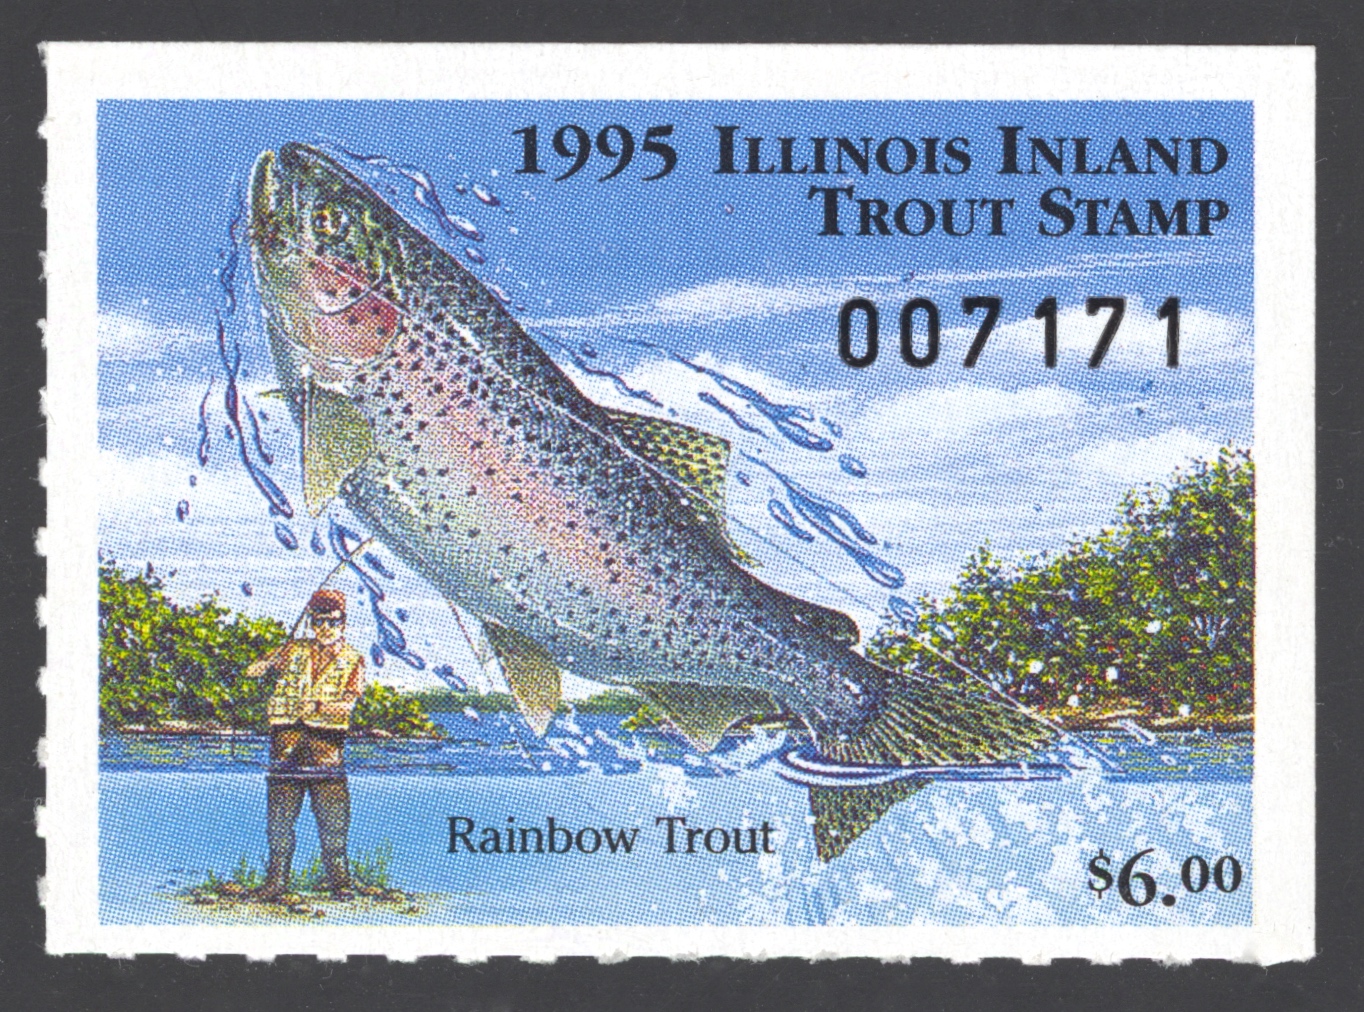 1995 Illinois Inland Tout